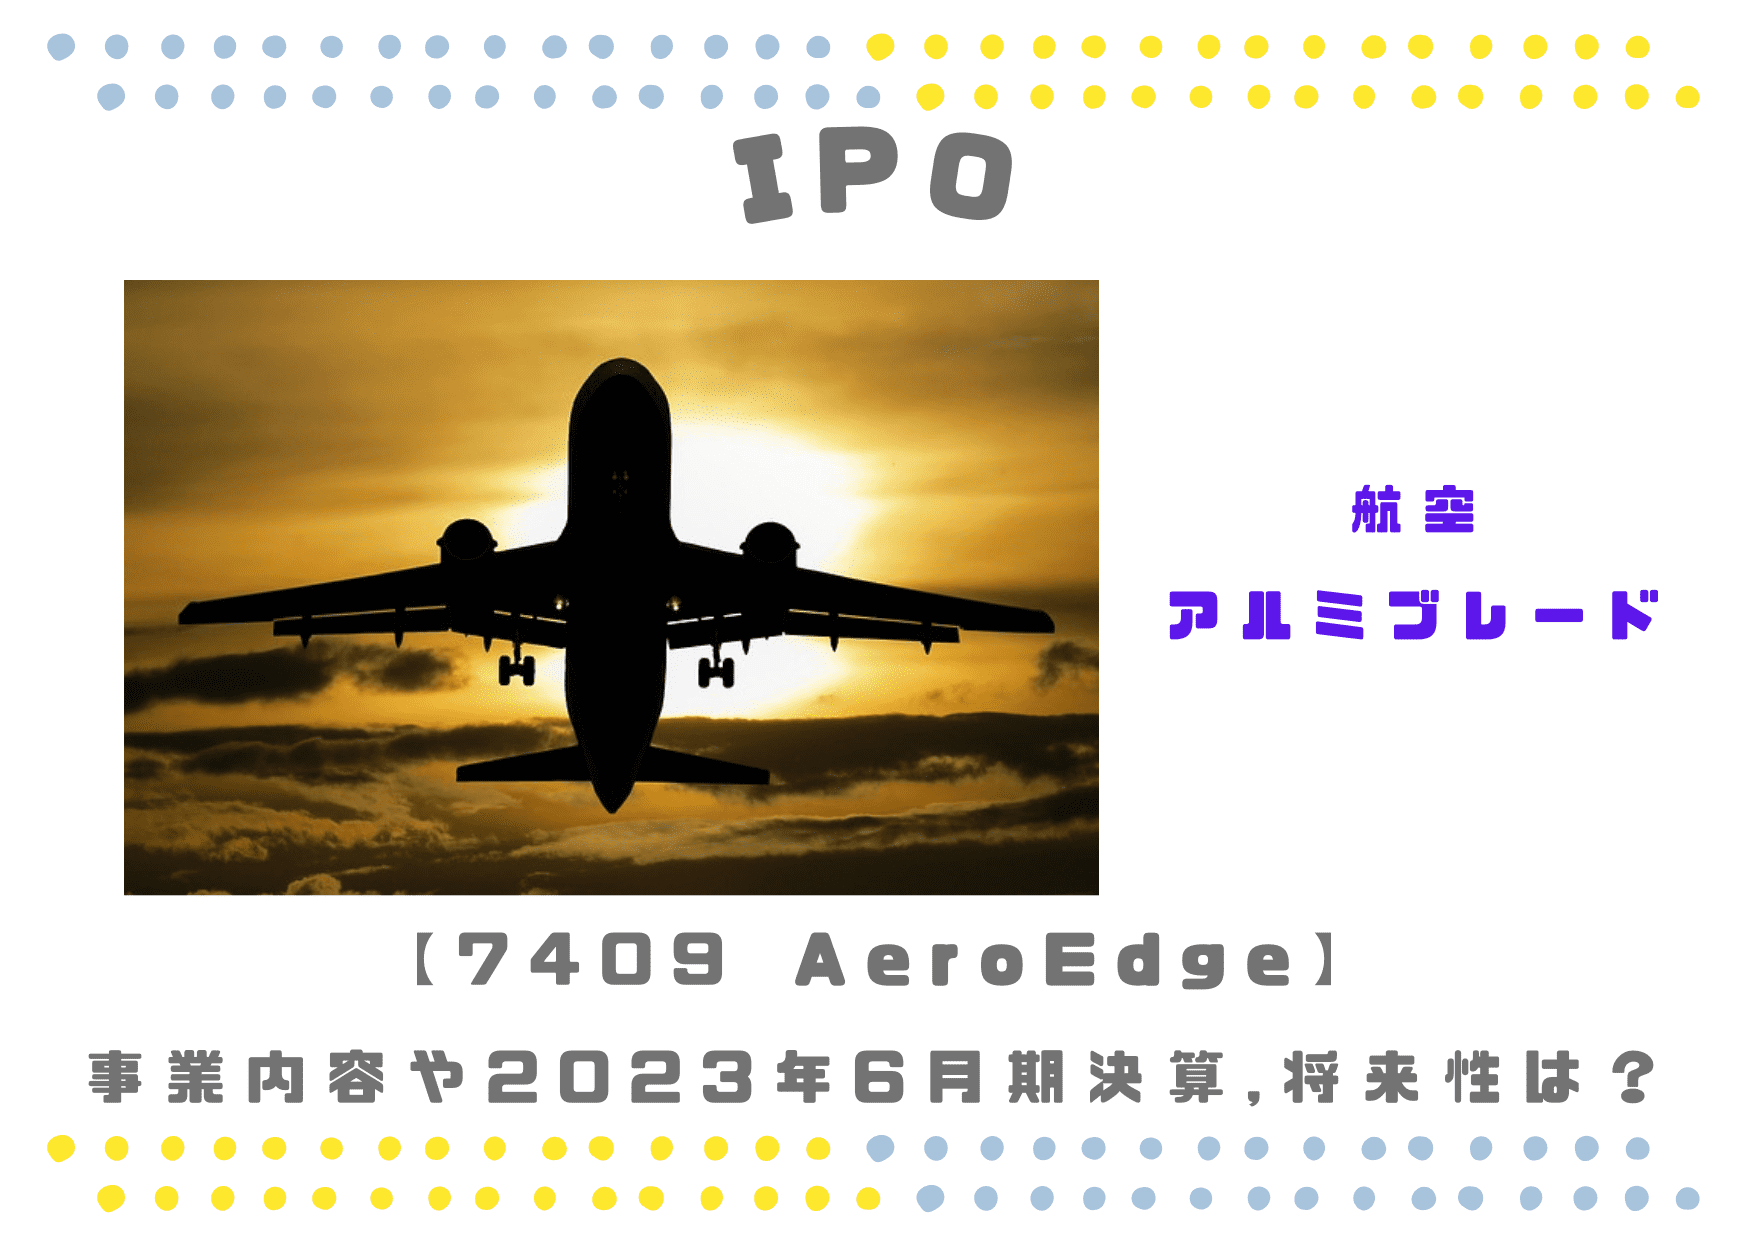 AeroEdge 7409 23年6月期業績と将来性は？